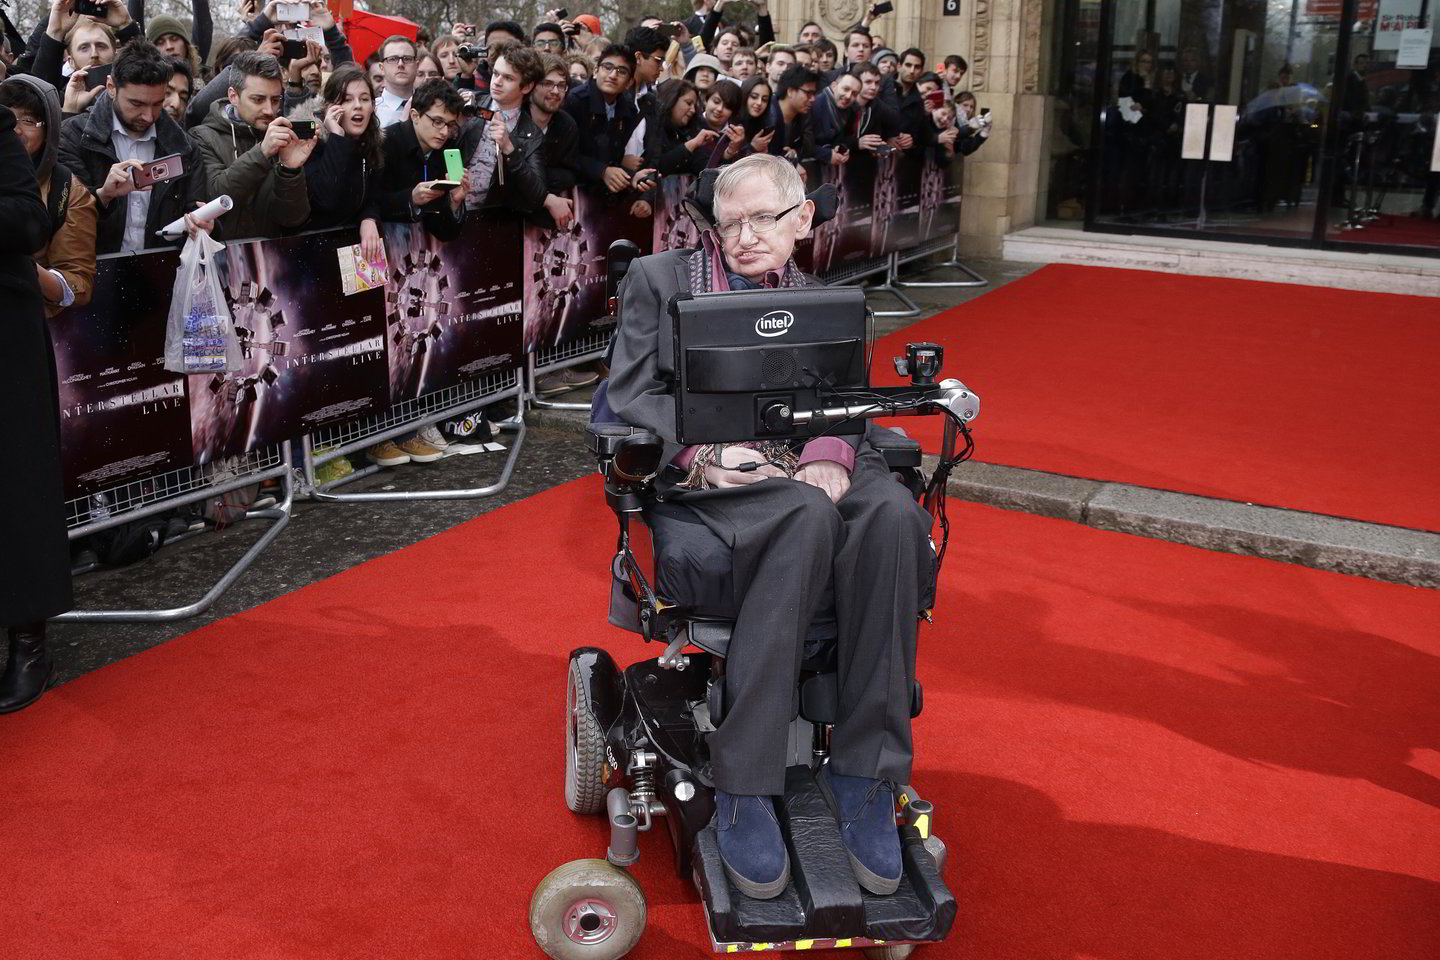  Medikai stebėjosi, kad S.Hawkingas net 55 metus grūmėsi su sunkia liga.